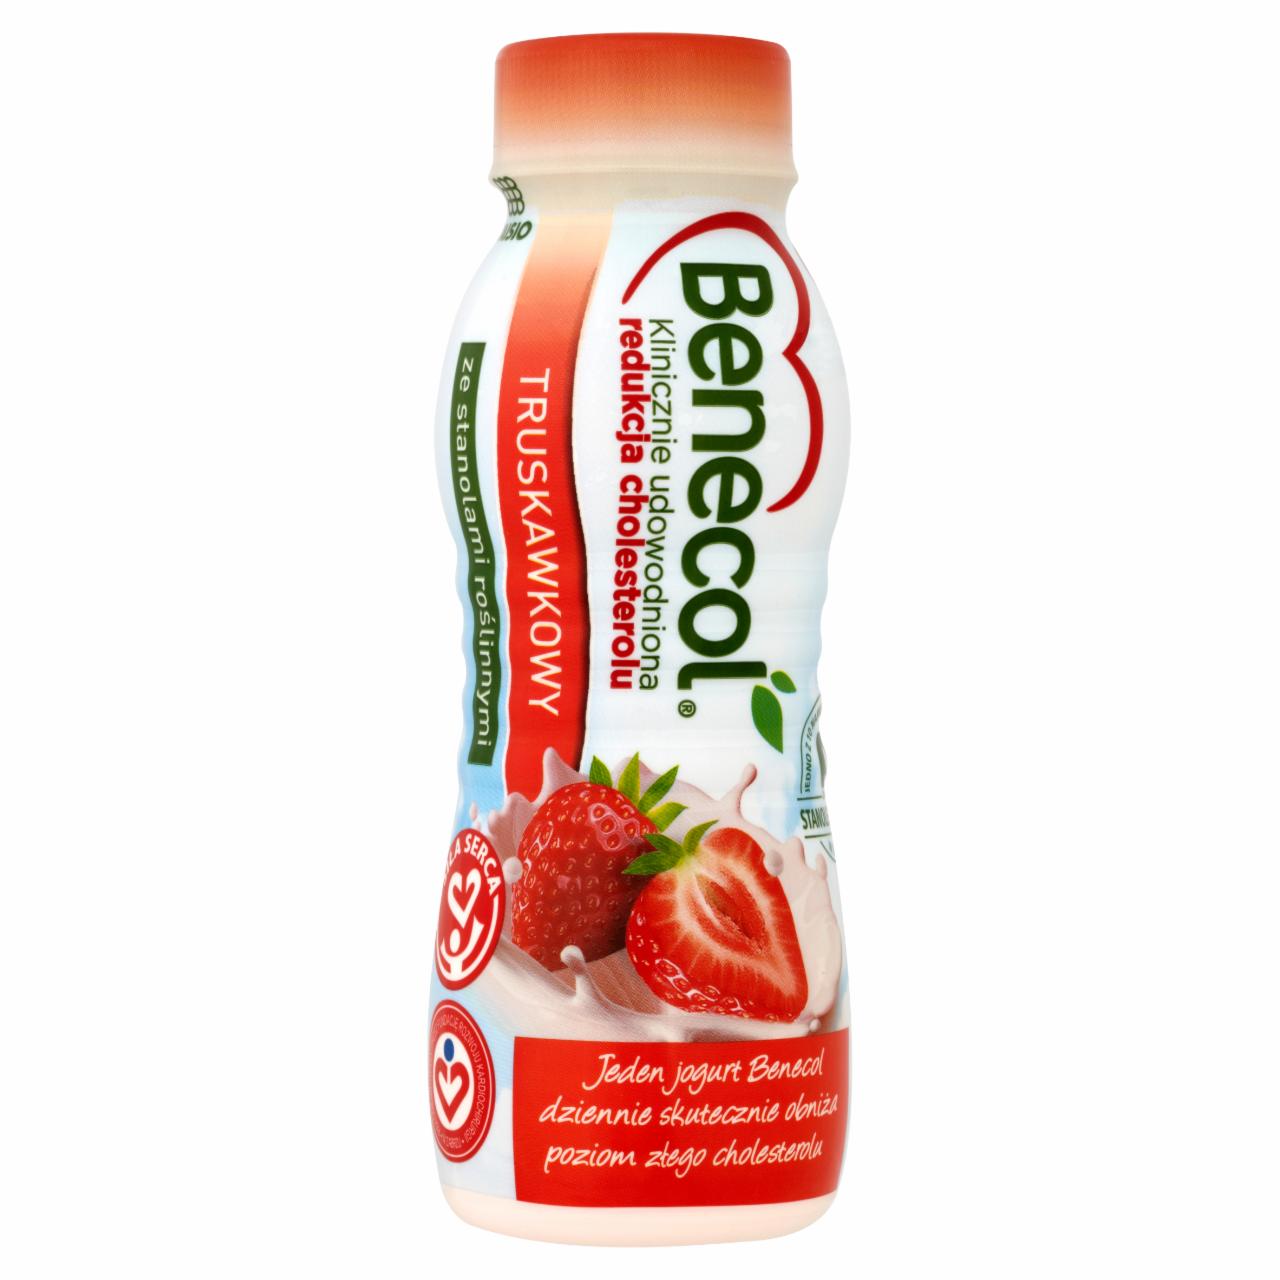 Zdjęcia - Benecol Jogurt pitny Truskawkowy 250 ml